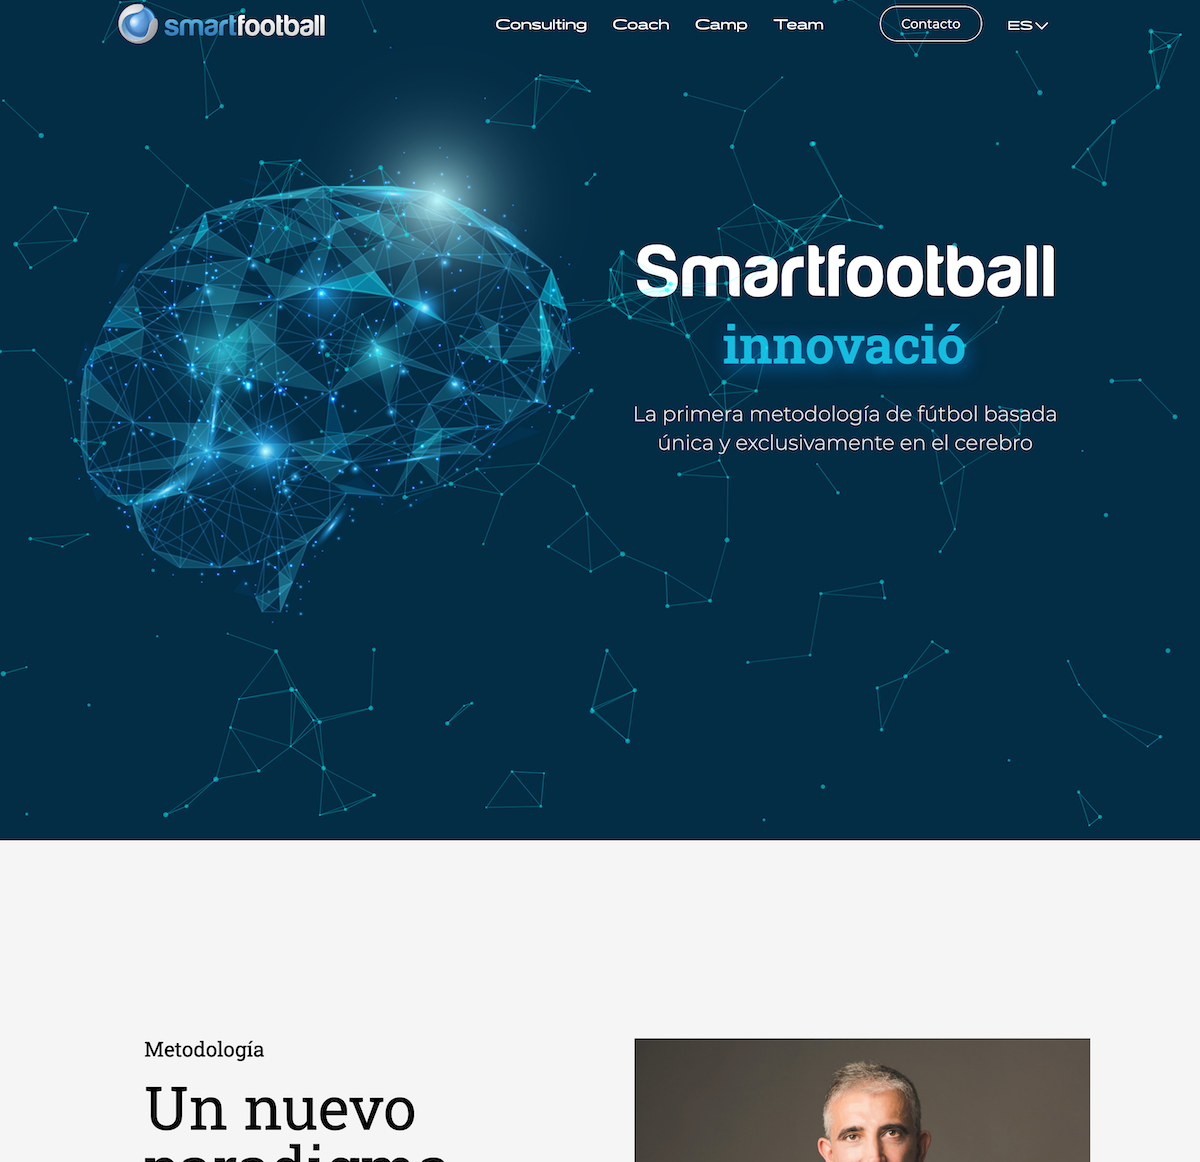 Smartfootball